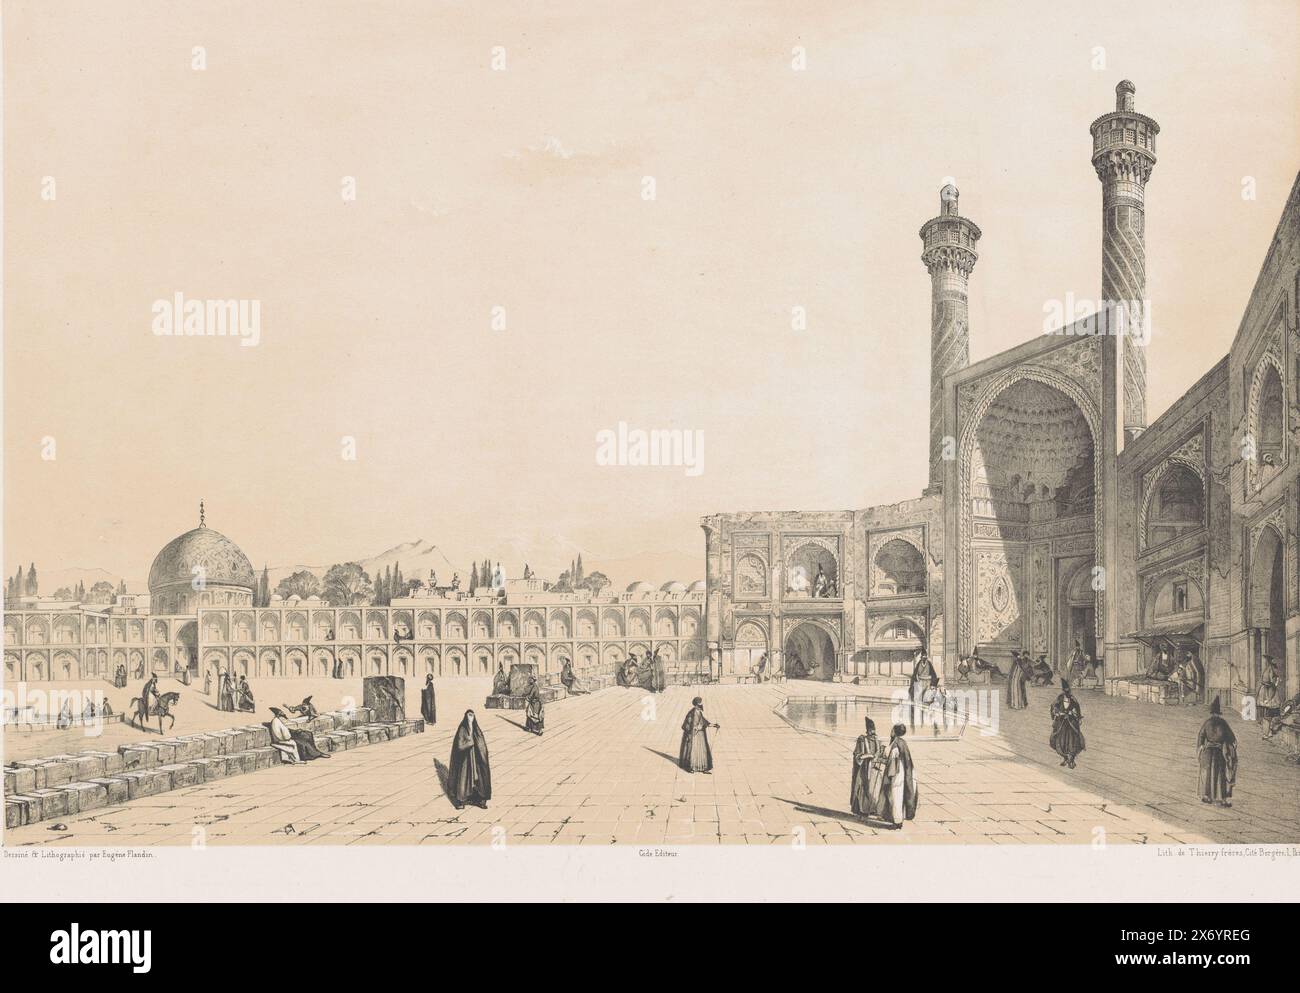 Entrée de la mosquée Jameh d'Ispahan, entrée de la grande mosquée Ispahan (titre sur objet), paysages persans (titre de la série), Perse Modern (titre de la série), vue de l'iwan sud de la mosquée Masjed-e Jamé. Au-dessus de l'image à gauche se trouve le titre de la série, au-dessus de la droite le numéro de plaque 'PL. LV'., imprimerie, imprimeur : Eugène Flandin, (mentionné sur l'objet), d'après son propre dessin par : Eugène Flandin, (mentionné sur l'objet), imprimeur : Thierry frères, (mentionné sur l'objet), Paris, 1843 - 1854, papier, hauteur, 432 mm × largeur, 516 mm Banque D'Images